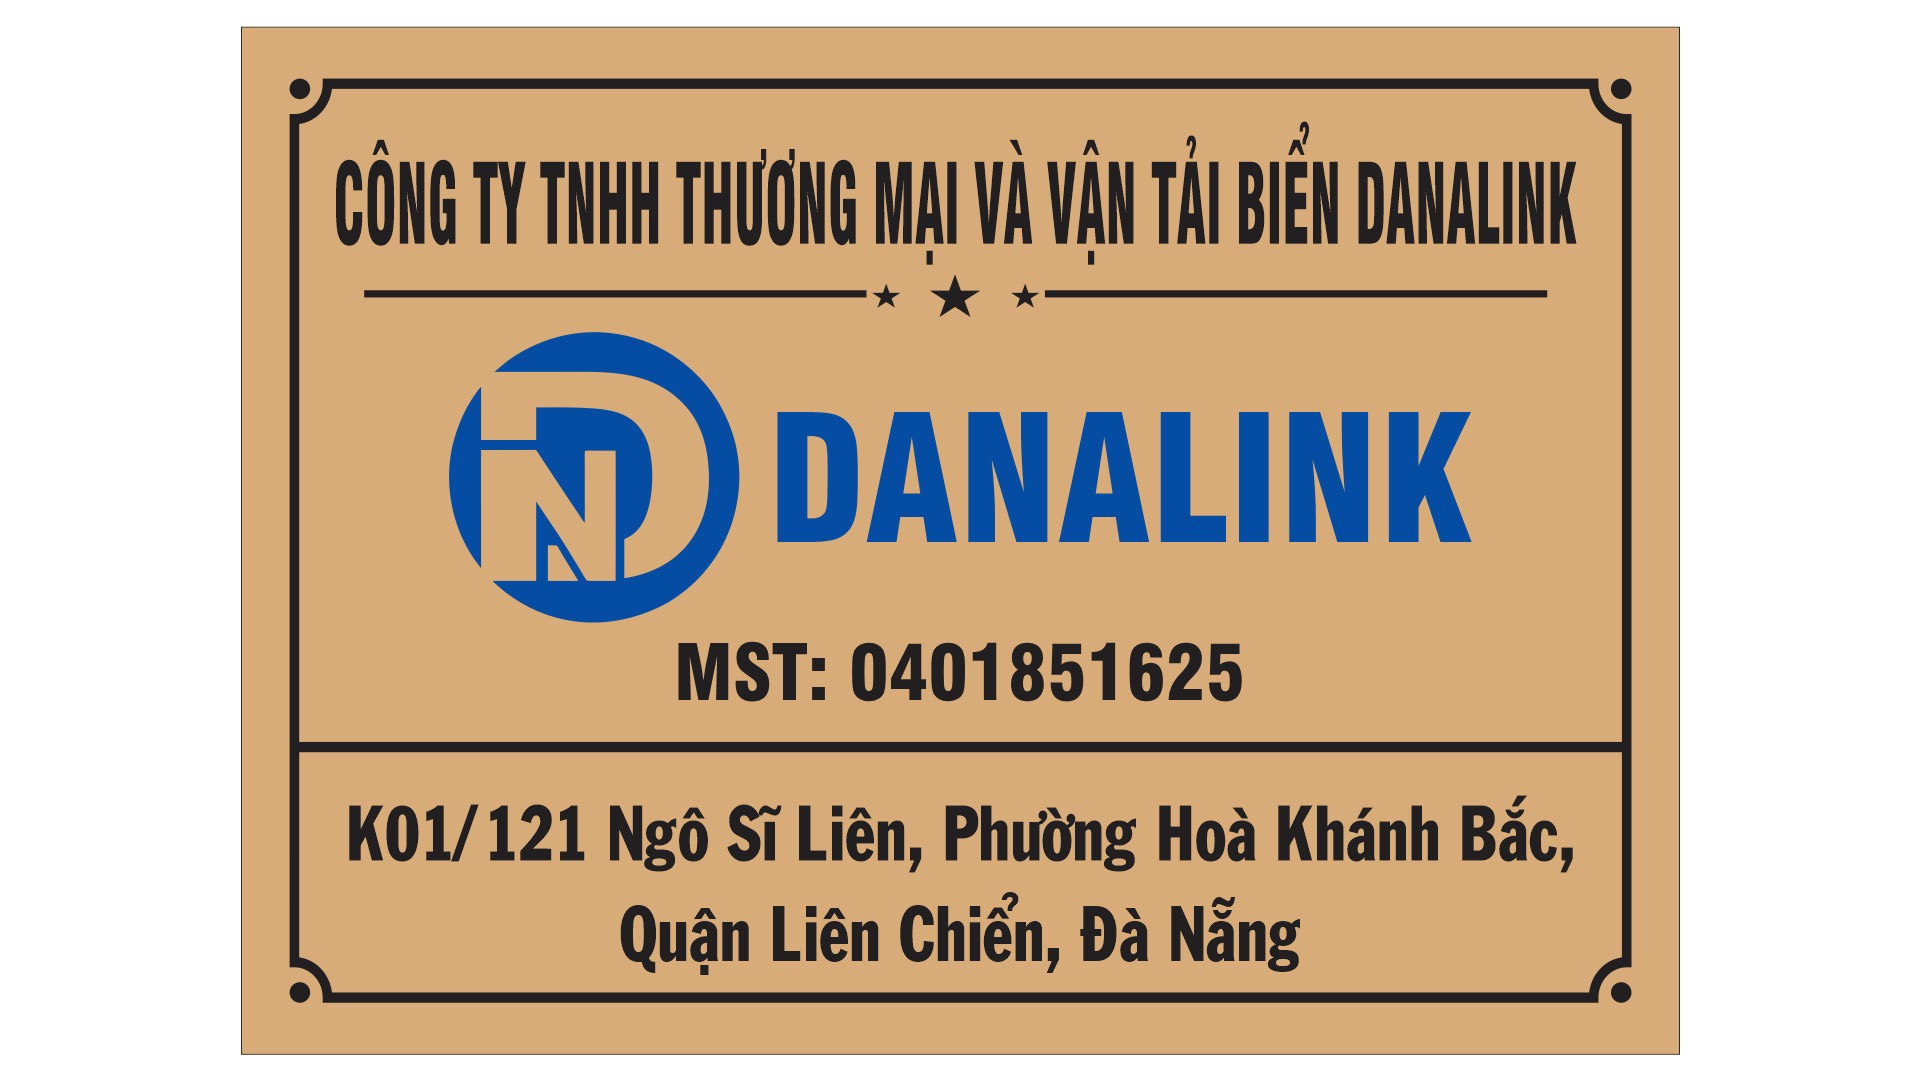  - Công Ty TNHH Thương Mại Và Vận tải Biển Danalink